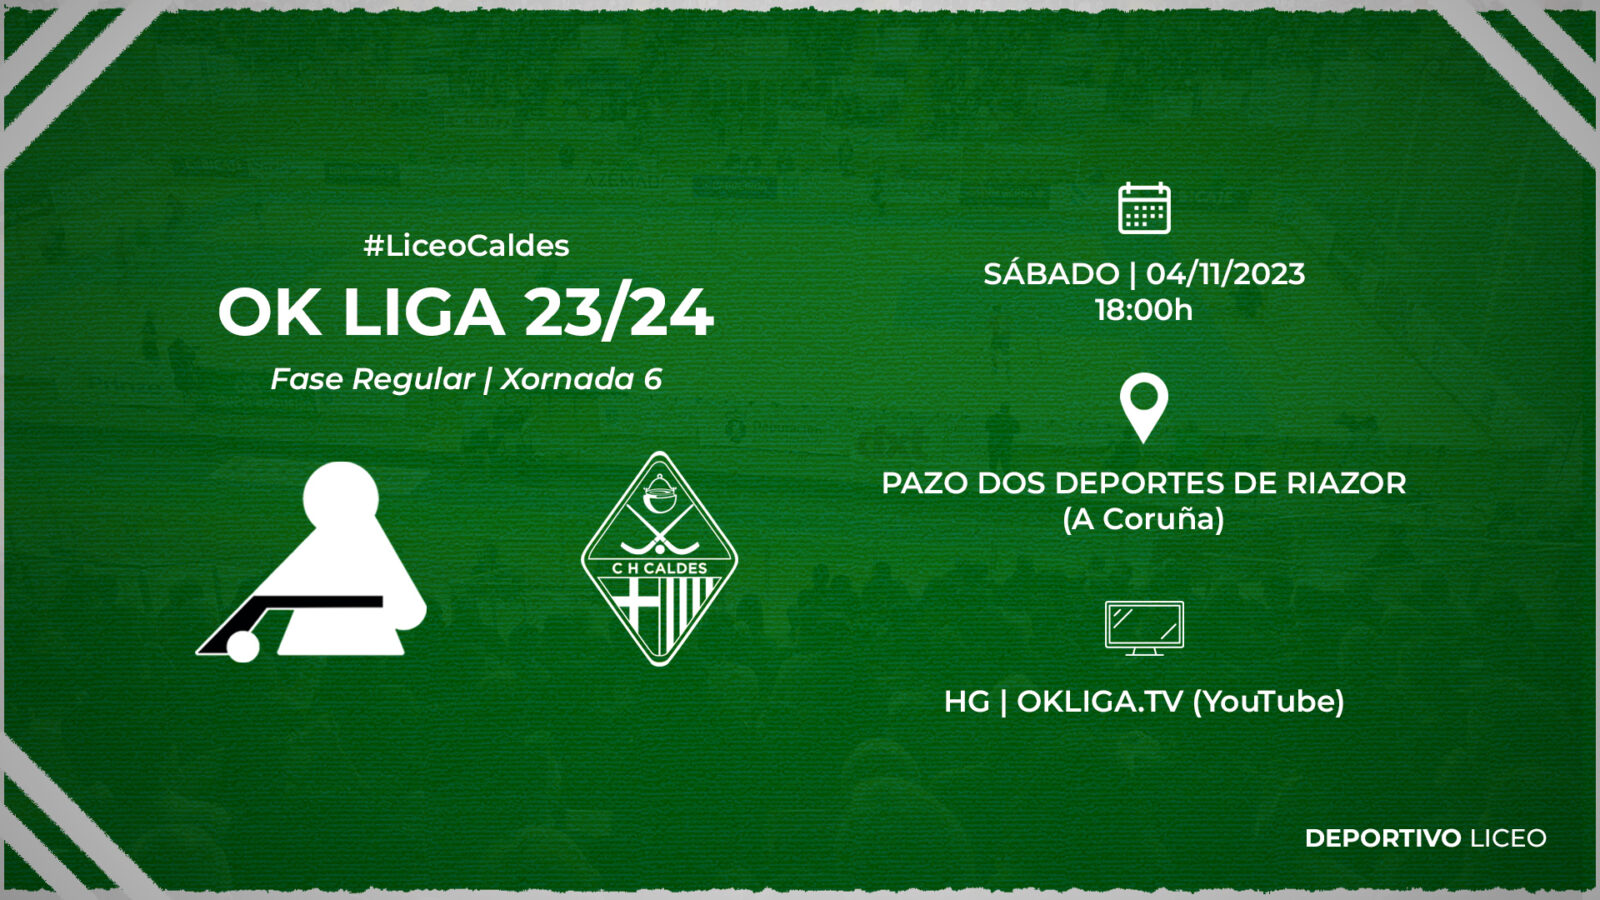 #LiceoCaldes | ENTRADAS para la jornada 6 de la OK Liga 23/24